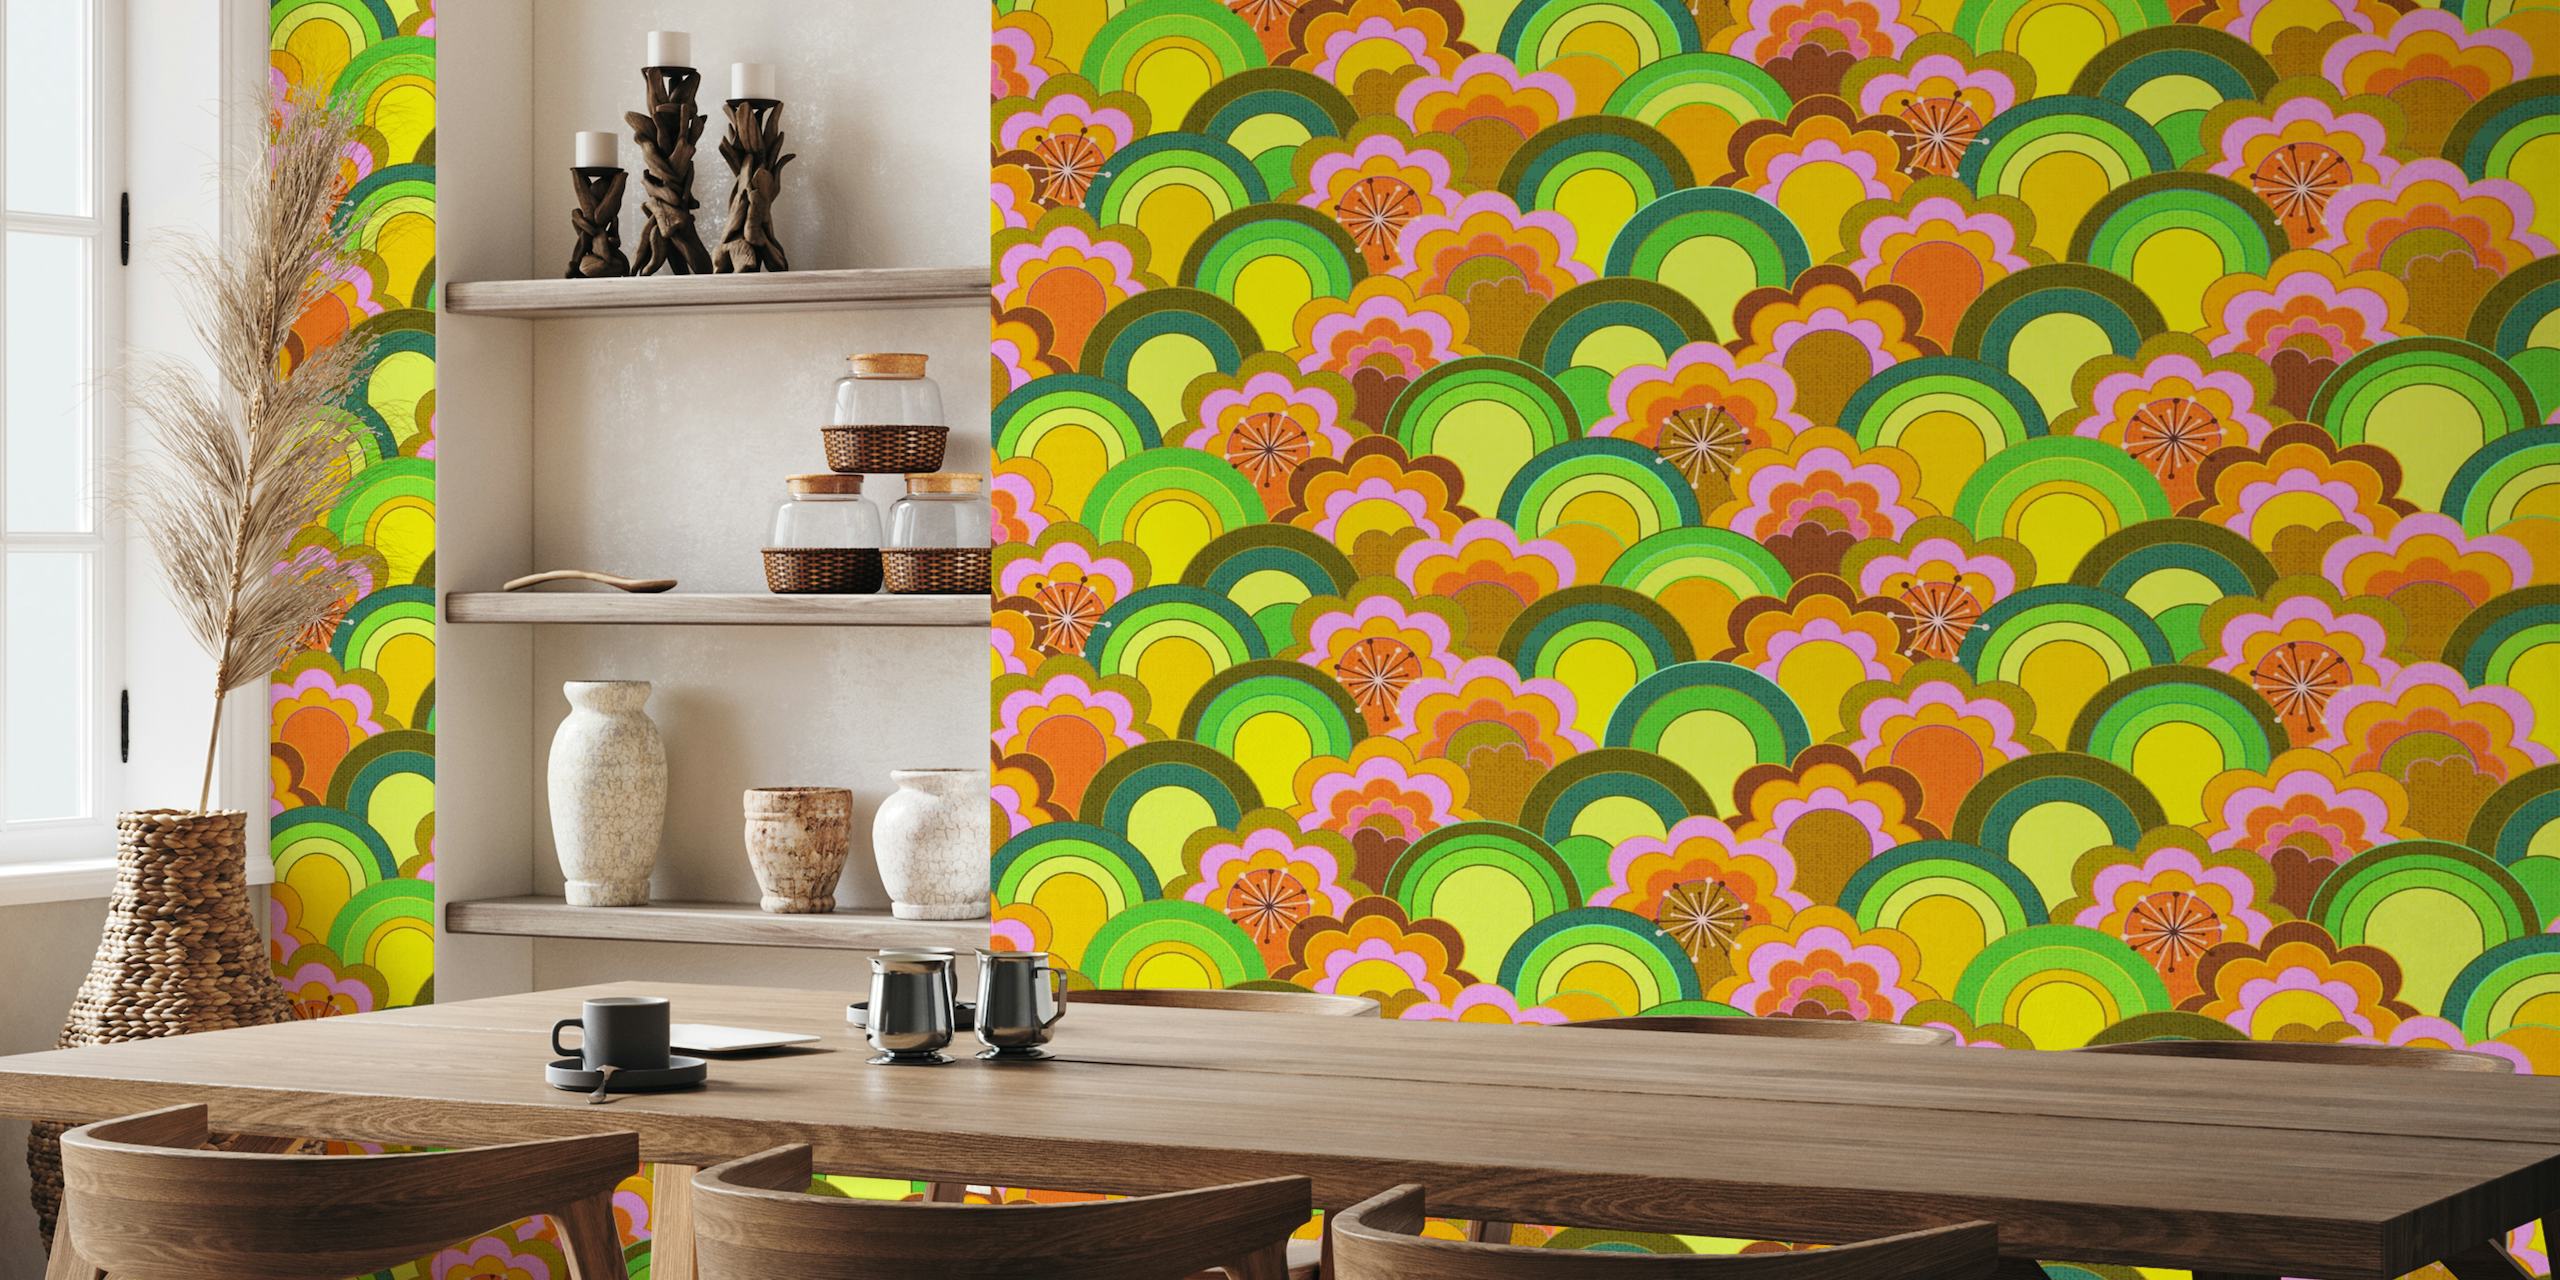 Kleurrijke, op de jaren 70 geïnspireerde muurschildering met regenboogbloemen en een gestructureerd uiterlijk